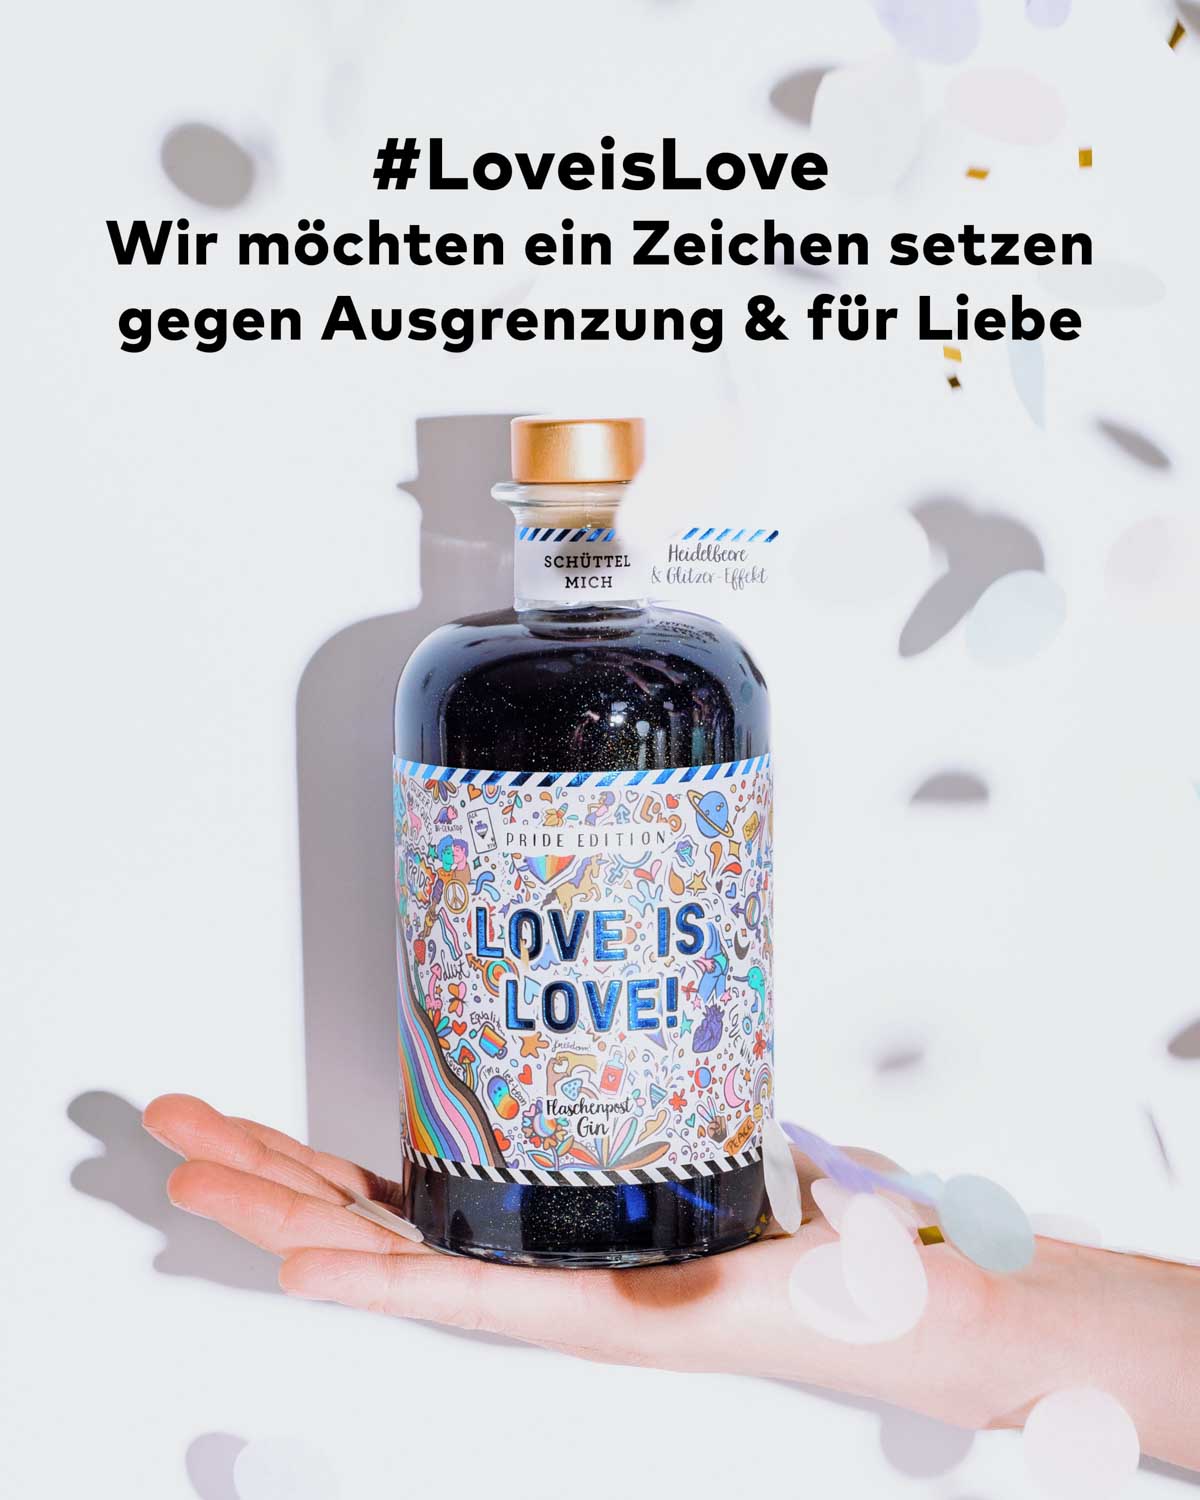 Die Flaschenpost Gin Pride Edition setzt mit ihrem inspirierenden Motto und dem Hashtag "Love is Love" ein starkes Statement gegen Ausgrenzung und für Liebe. Unser Ziel ist es, die Botschaft der Akzeptanz und Vielfalt zu verbreiten und Menschen zusammenzubringen.